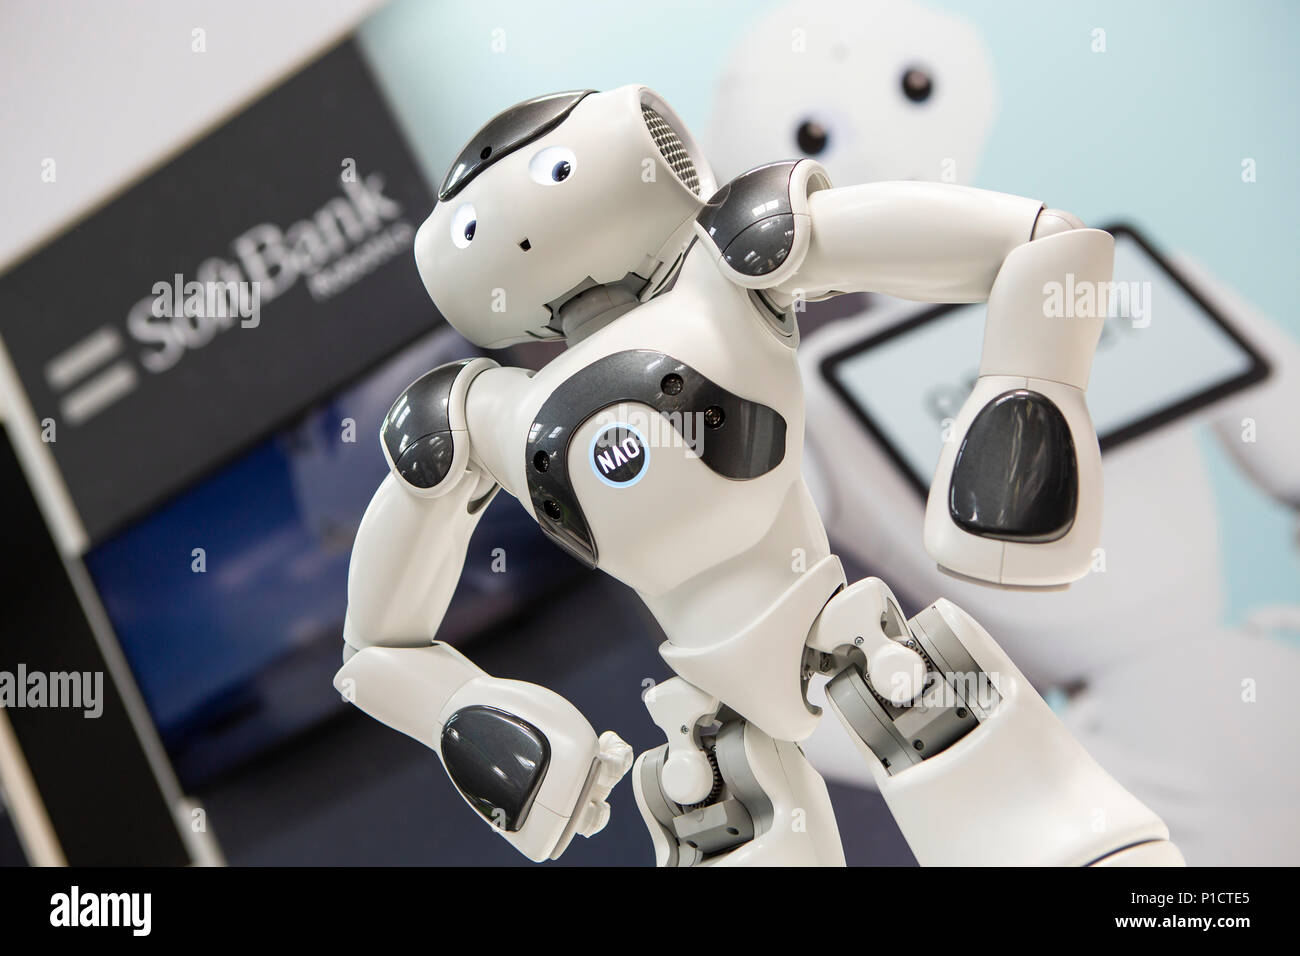 Softbank robotics nao robot hi-res stock photography and images - Alamy